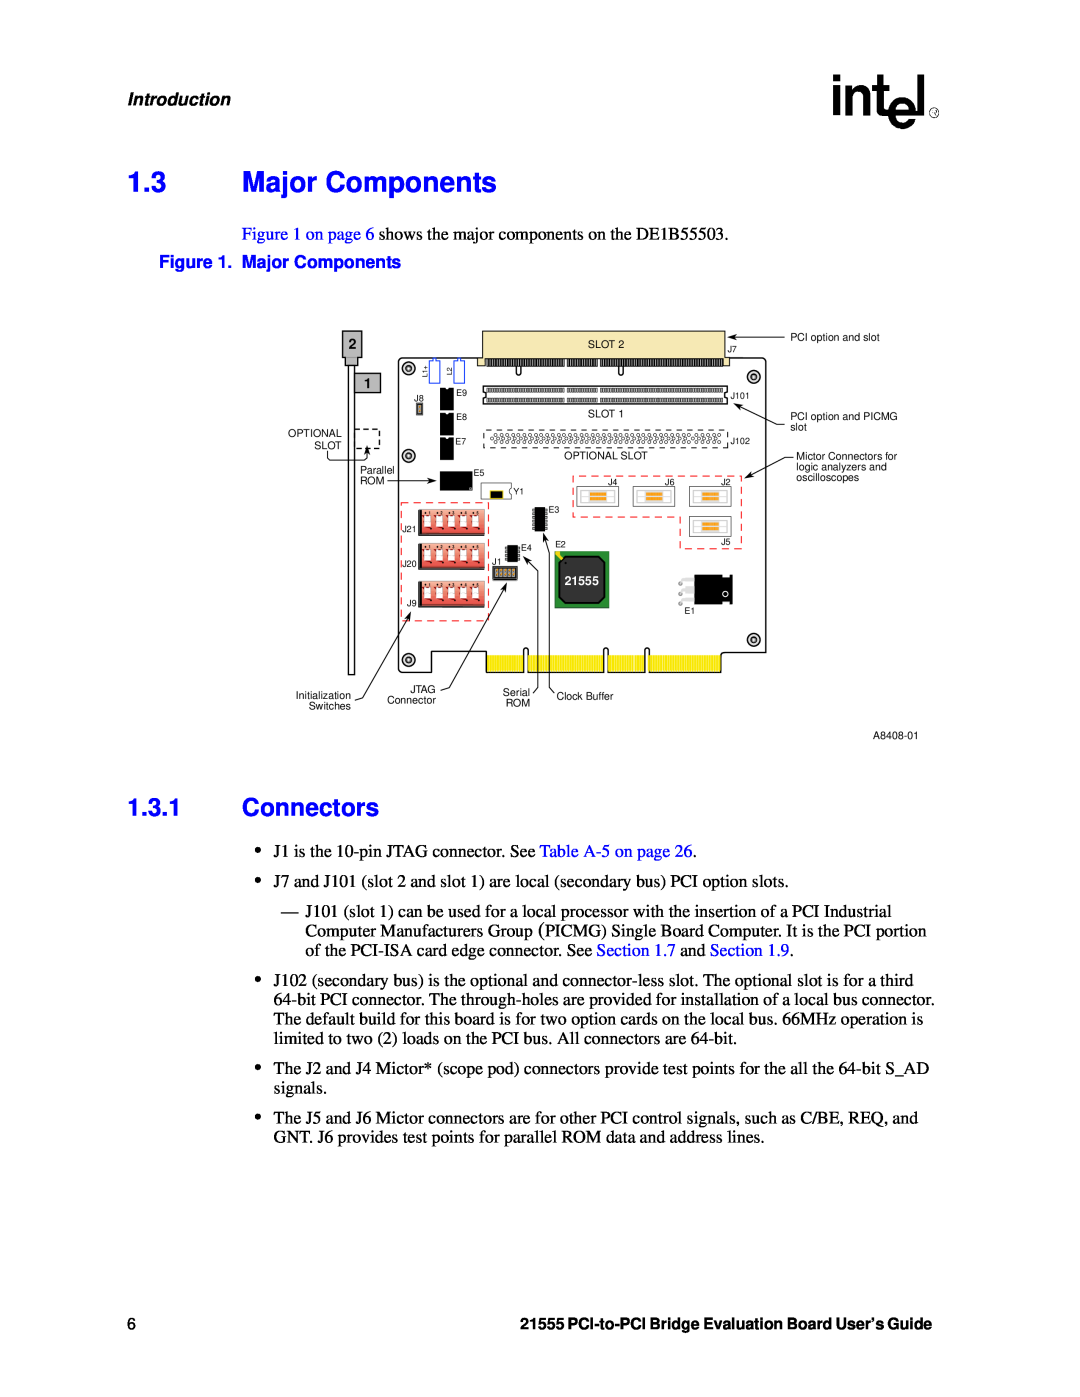 Intel 21555 manual Major Components, Connectors, Introduction 